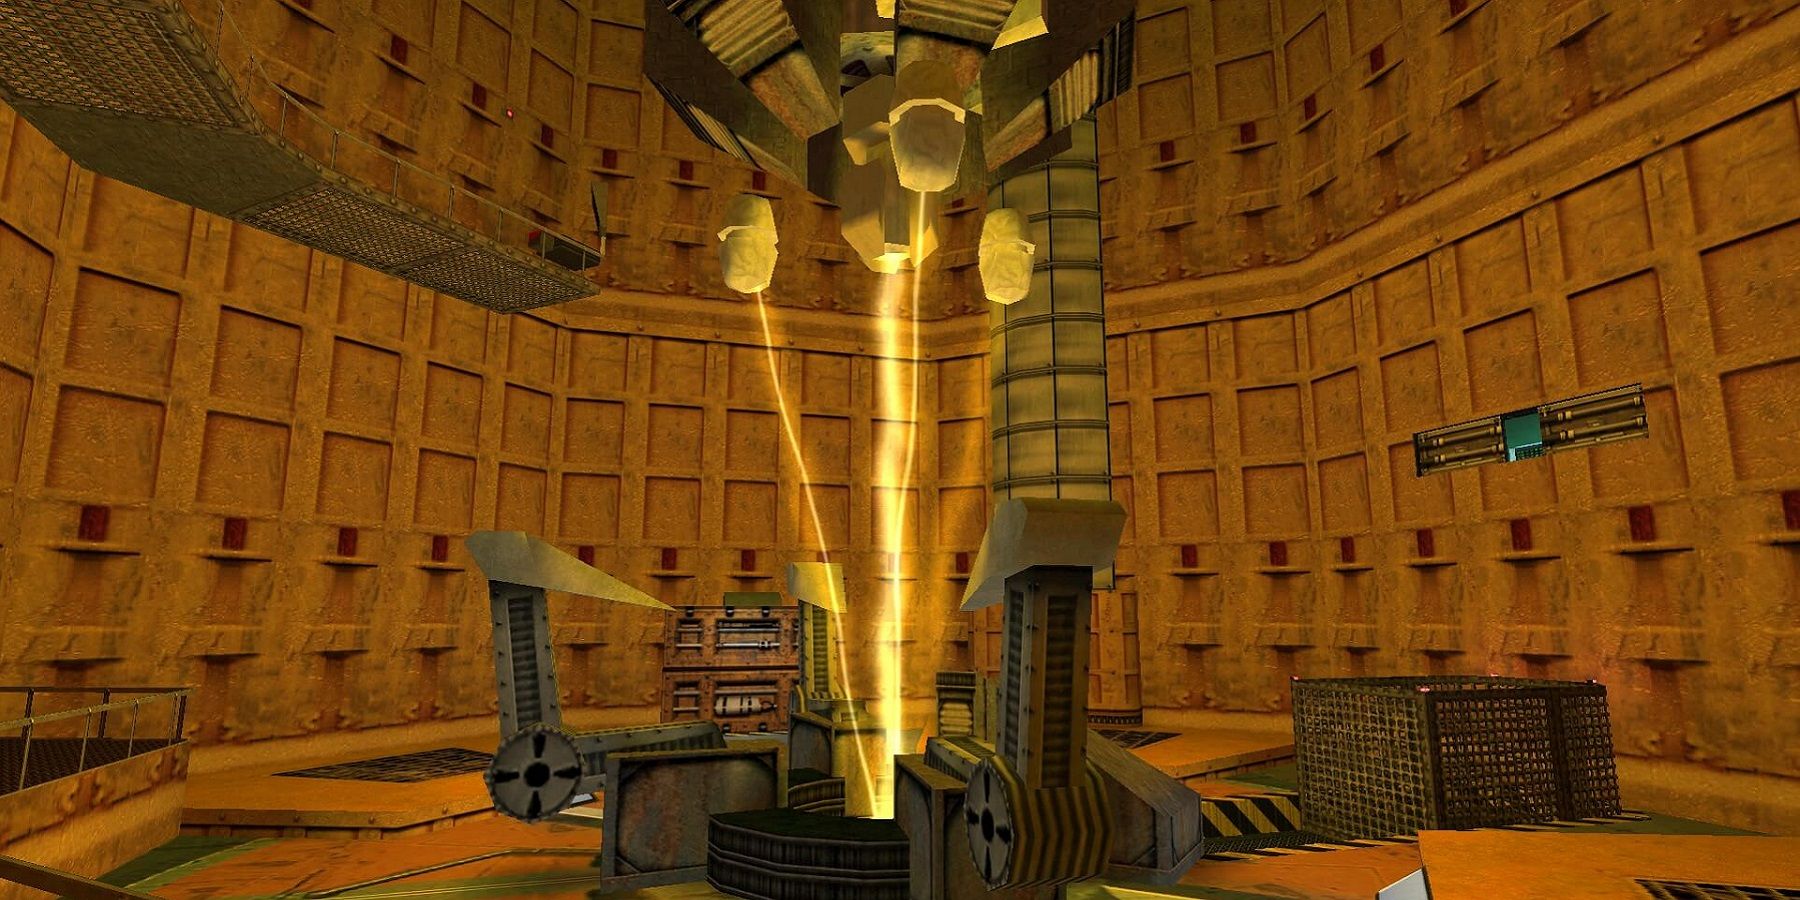 Изображение из оригинального Half-Life, показывающее активированную тестовую камеру в начале.